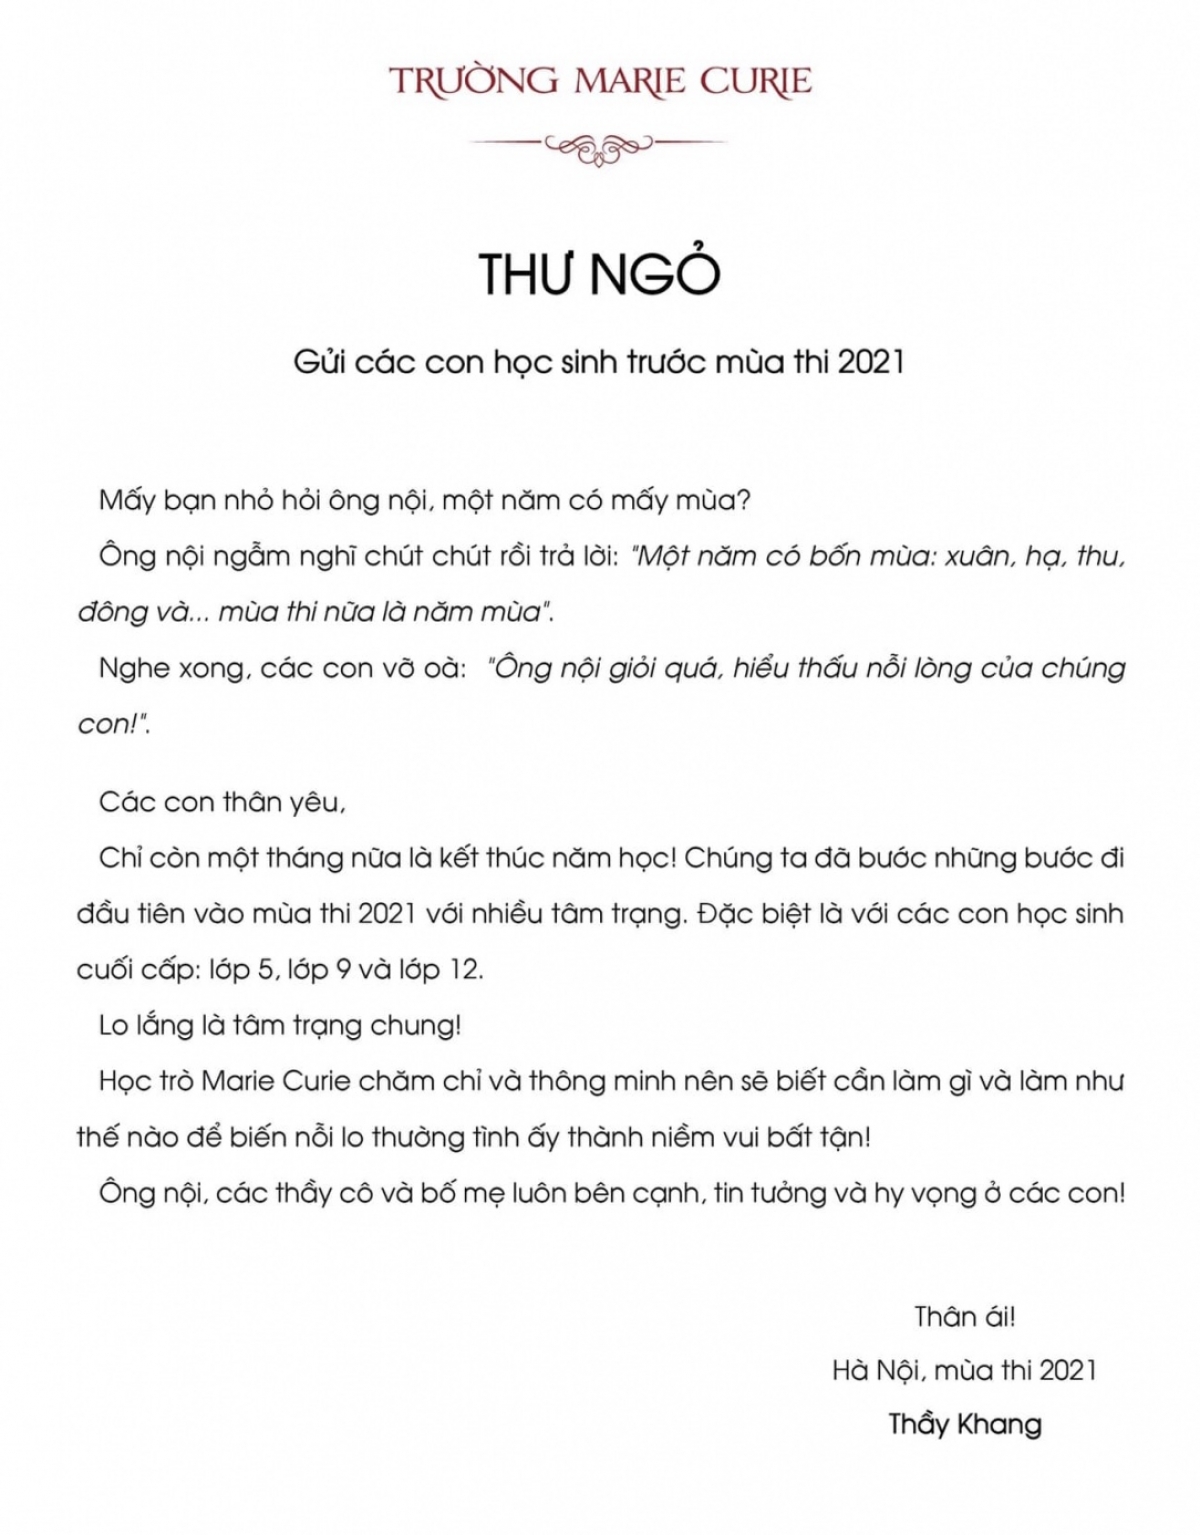 Bức thư ngỏ gây "sốt" cộng đồng mạng của thầy Nguyễn Xuân Khang